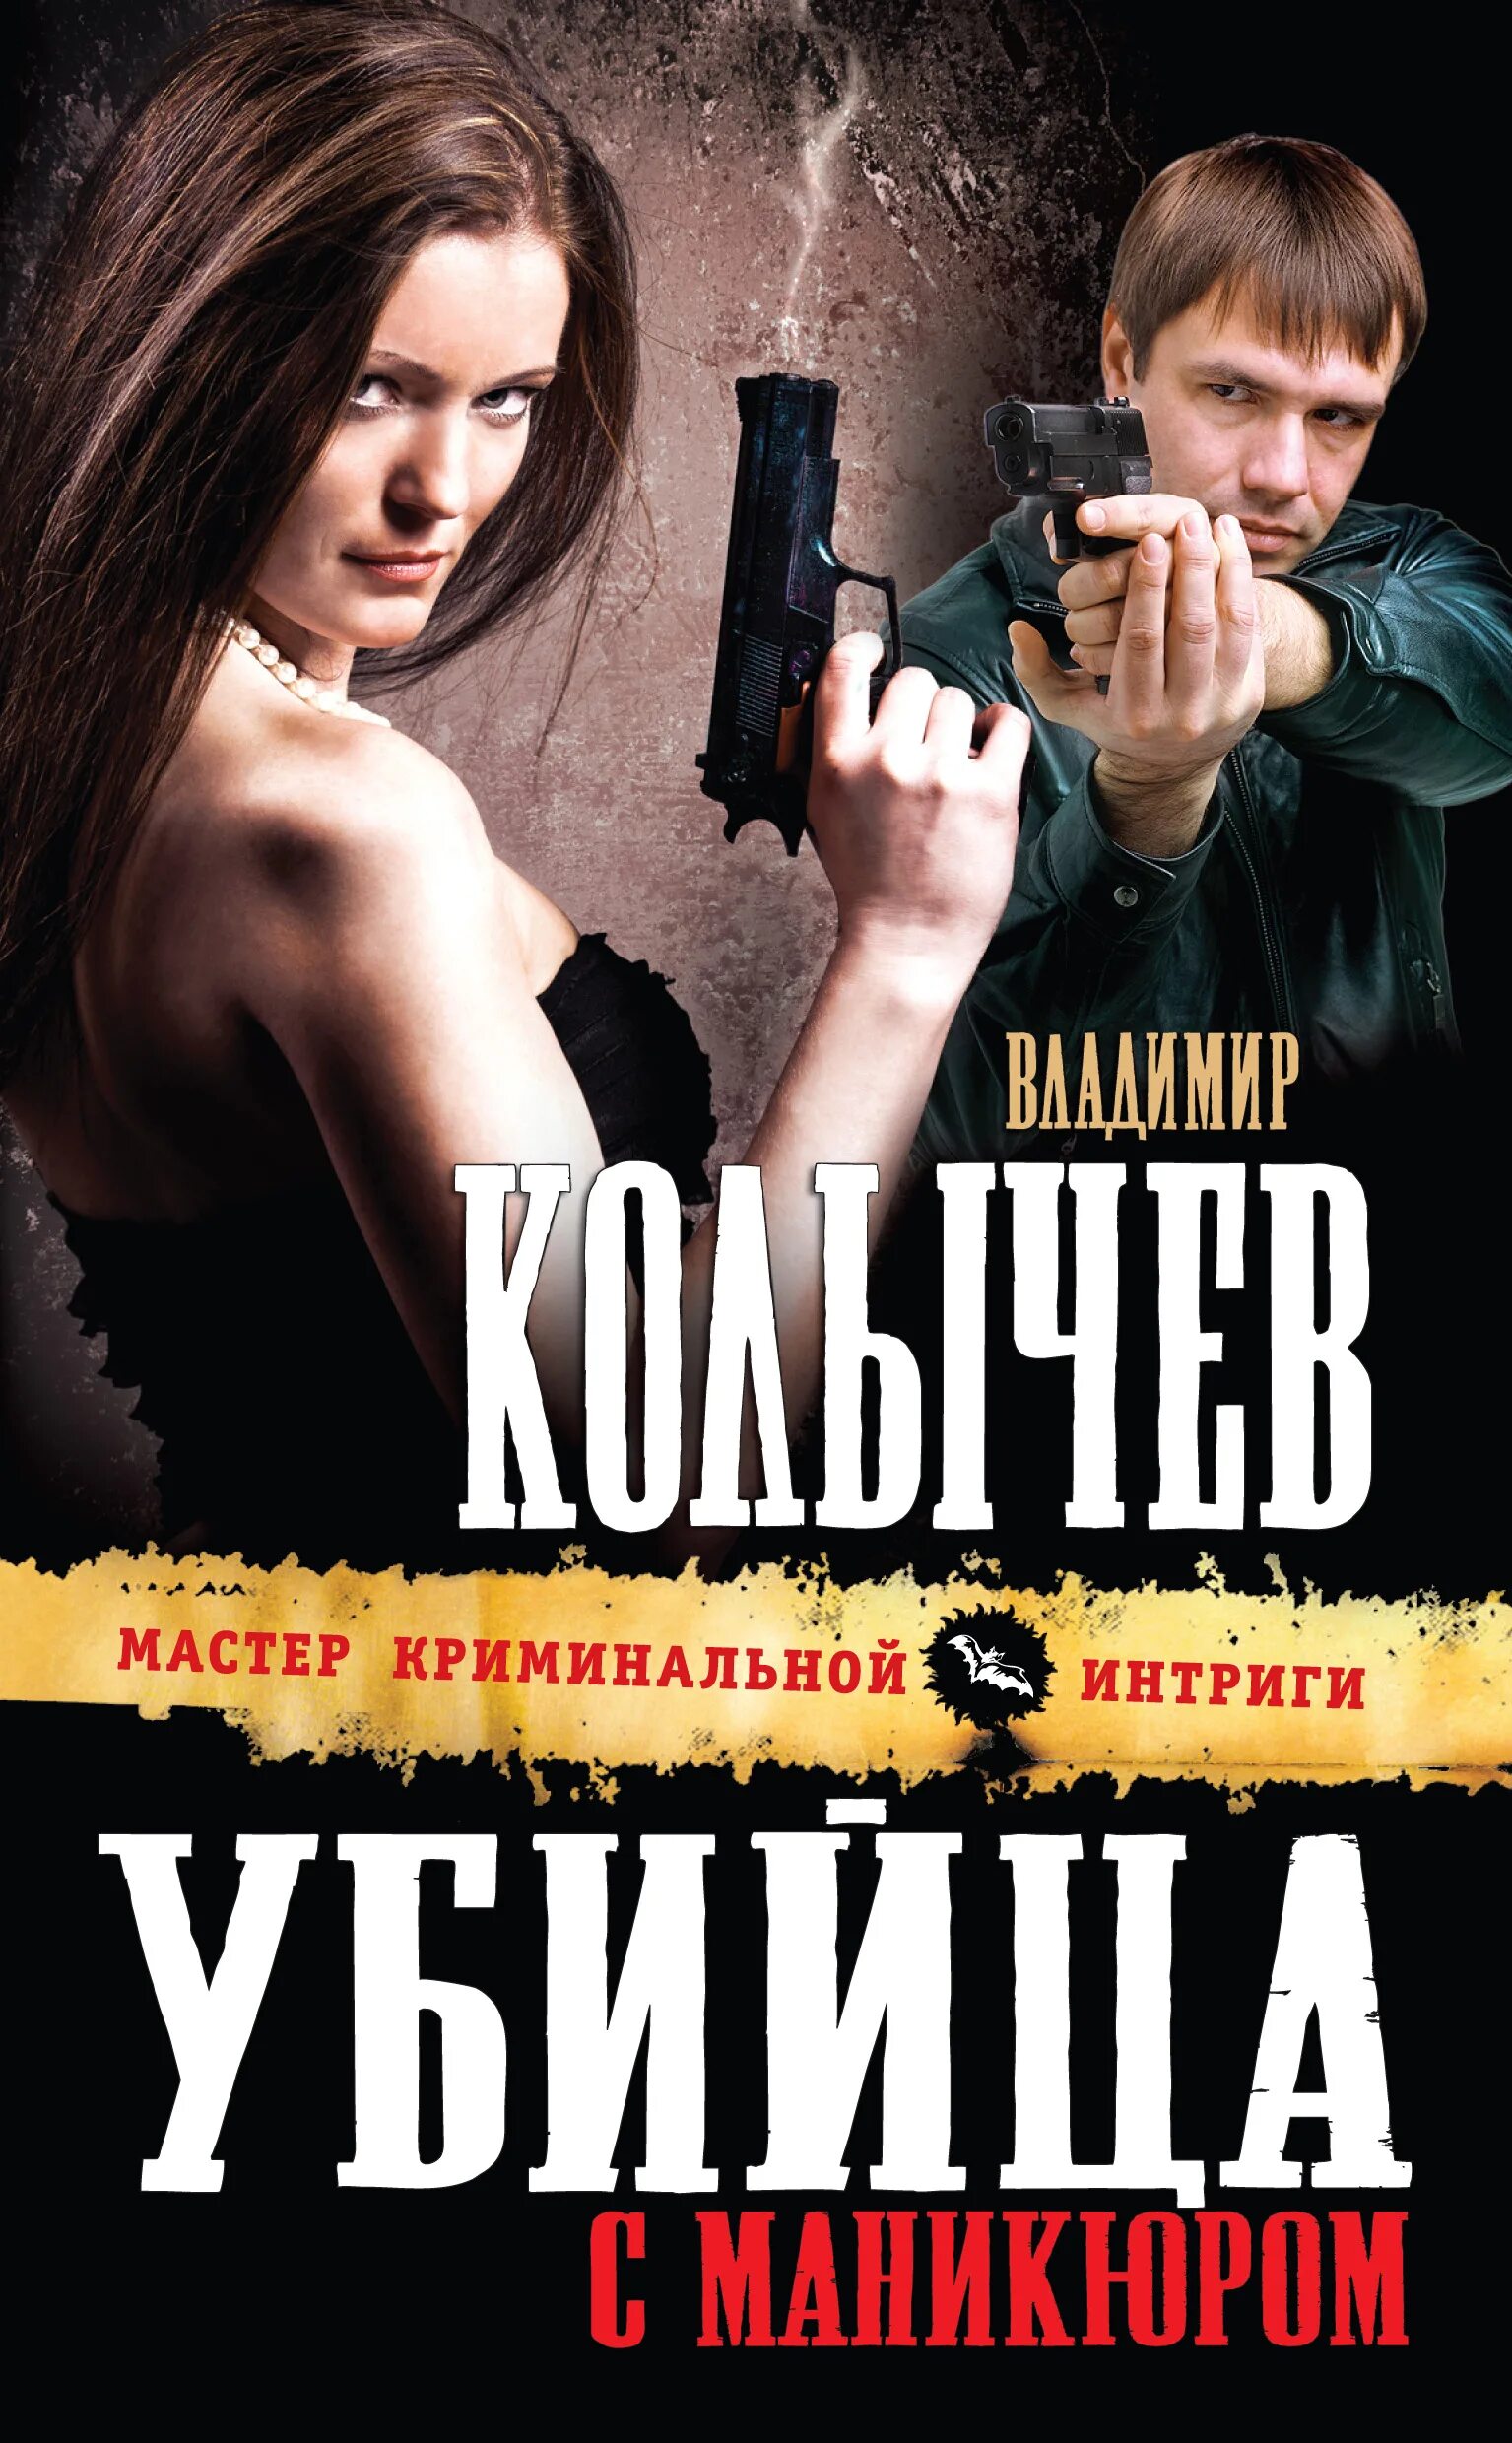 Книга про убийцу девушку. Книги о убийцах детективы.